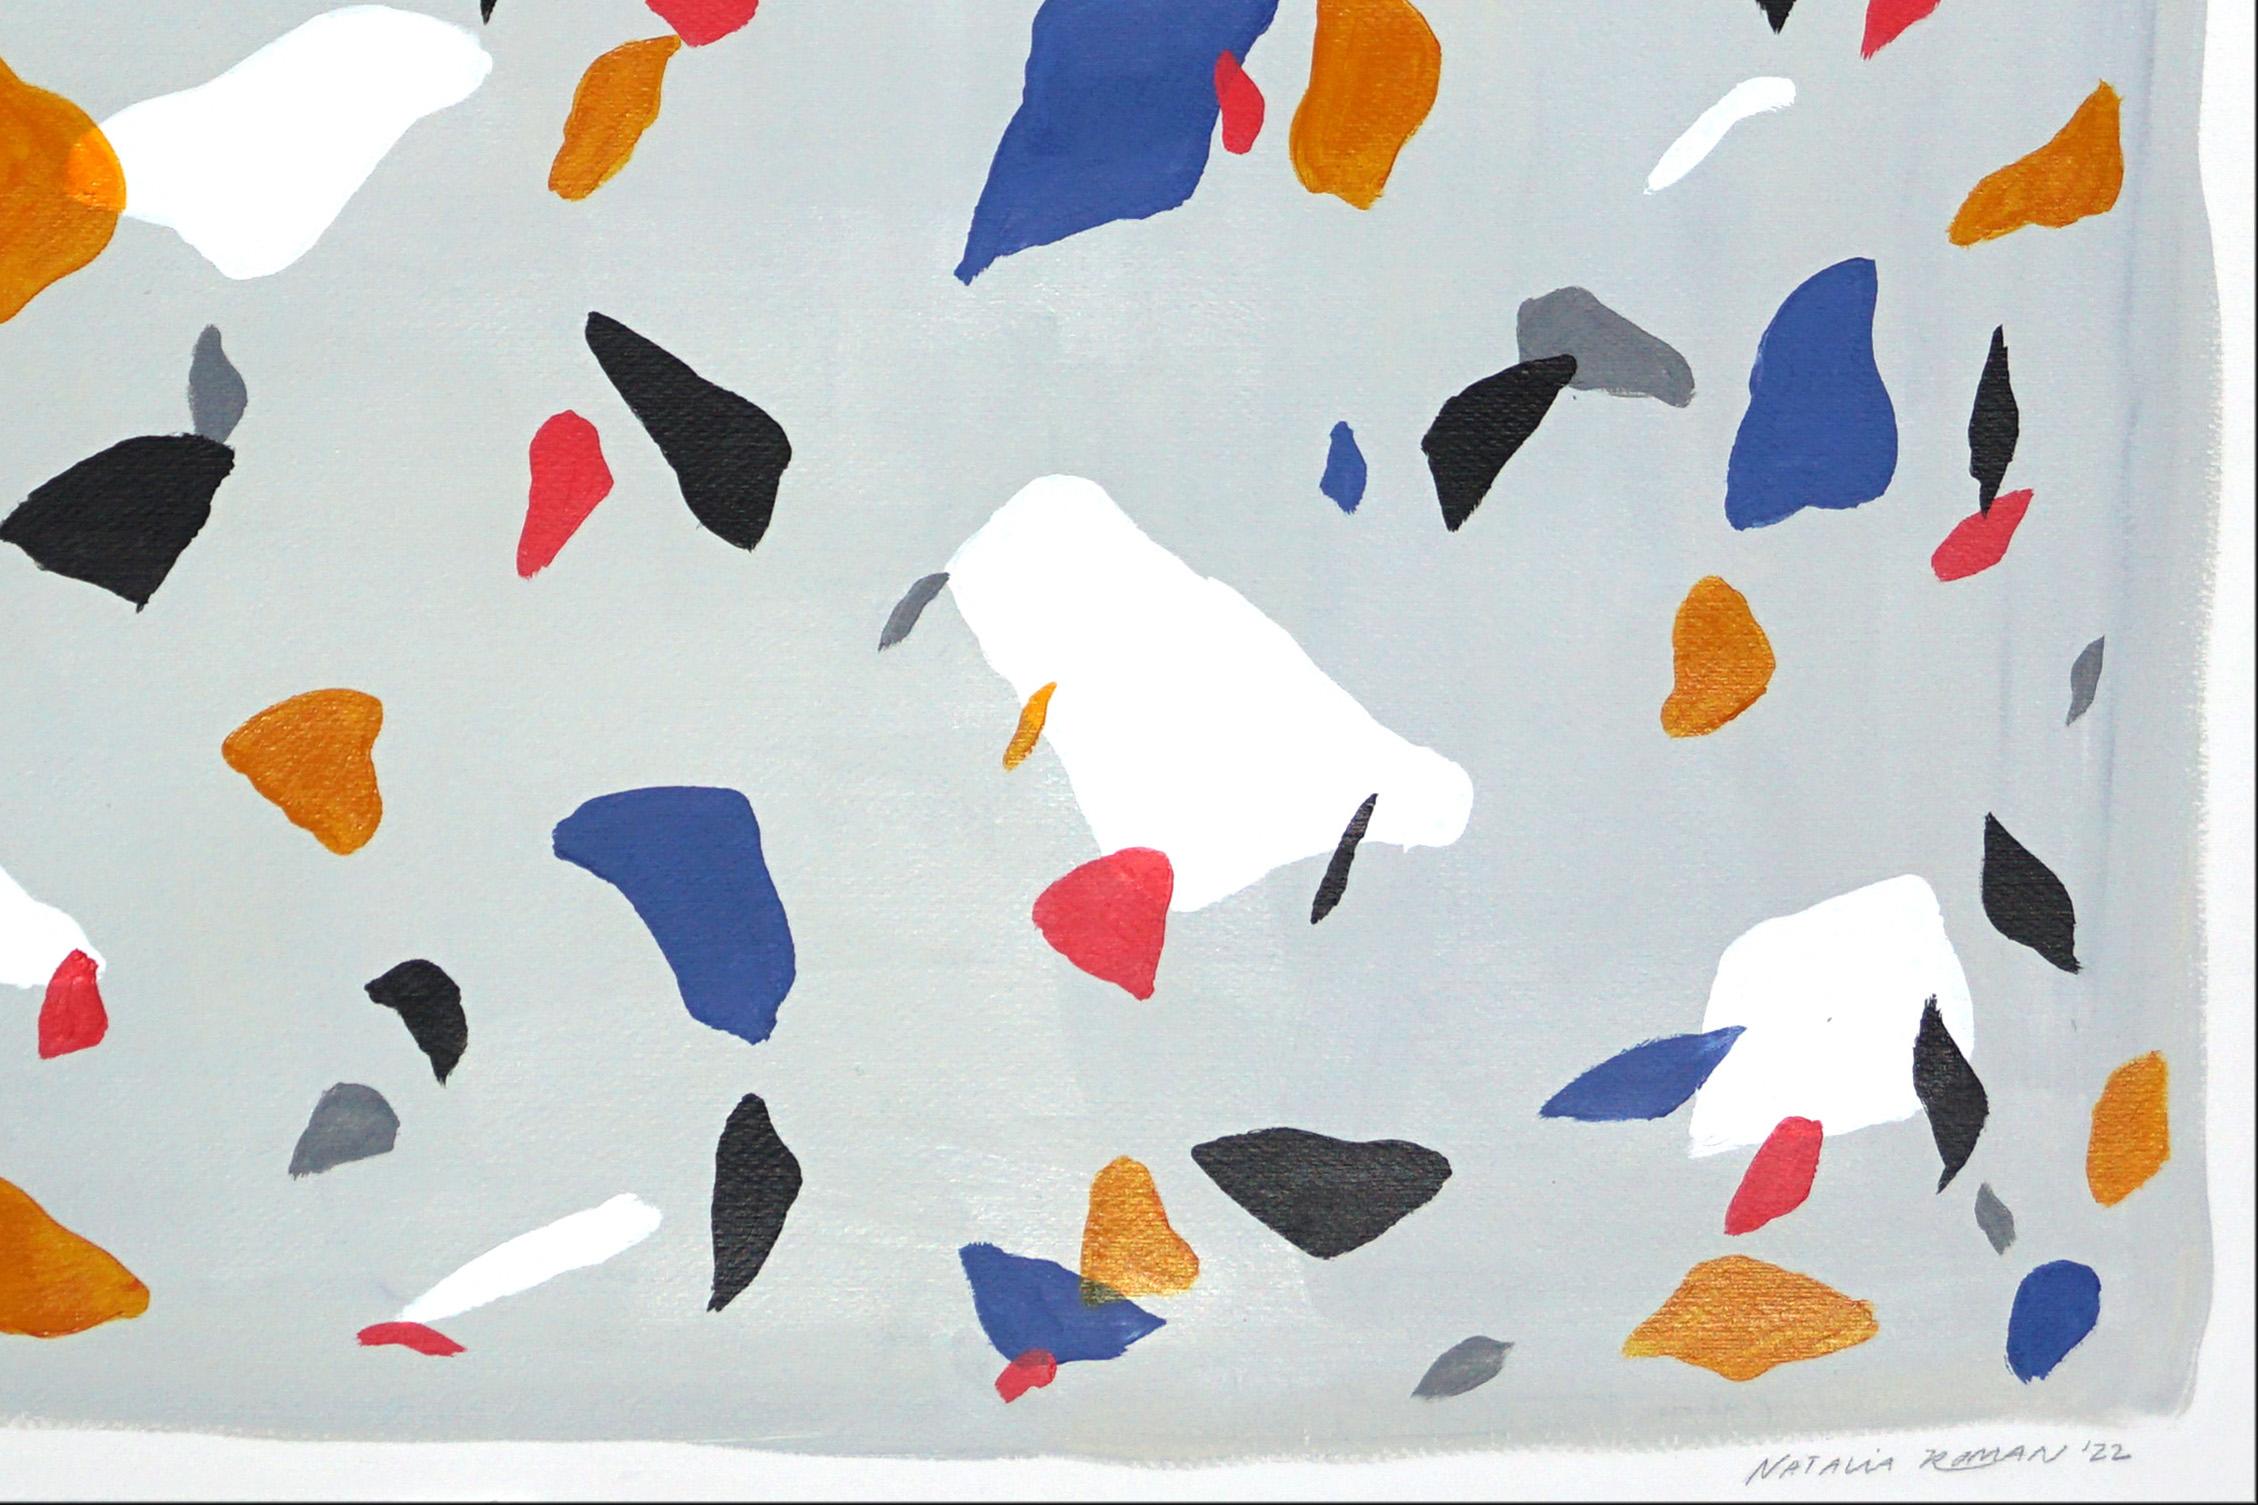 Couleurs primaires sur terrazzo gris, peinture carrée sur papier d'aquarelle, minimaliste - Impressionnisme abstrait Painting par Natalia Roman